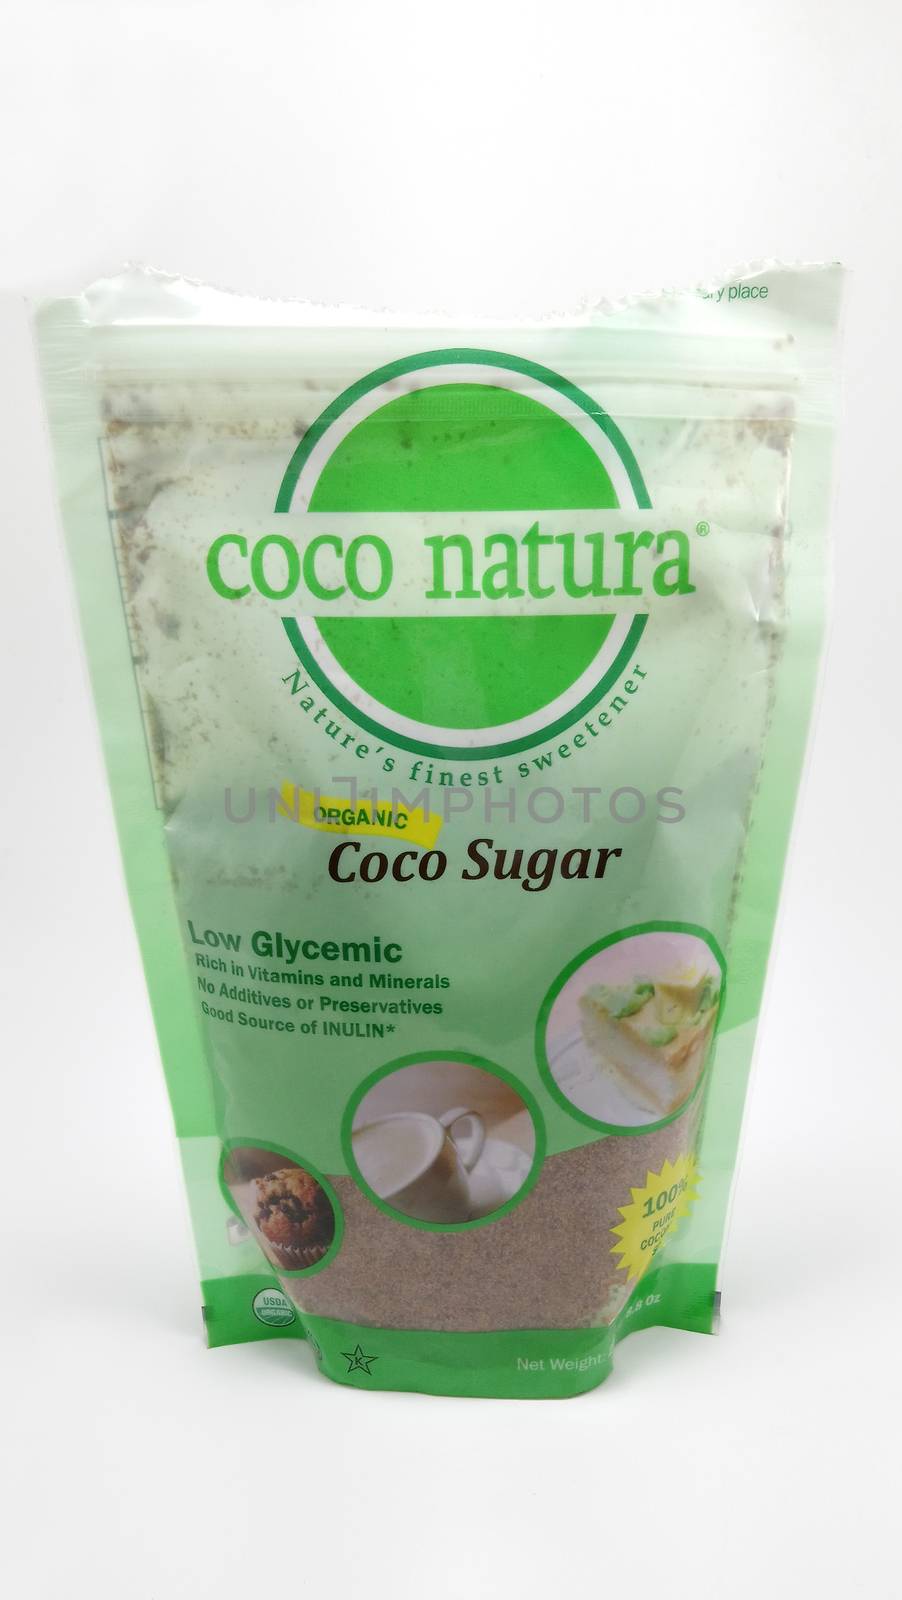 MANILA, PH - JUNE 23 - Coco natura organic coco sugar on June 23, 2020 in Manila, Philippines.